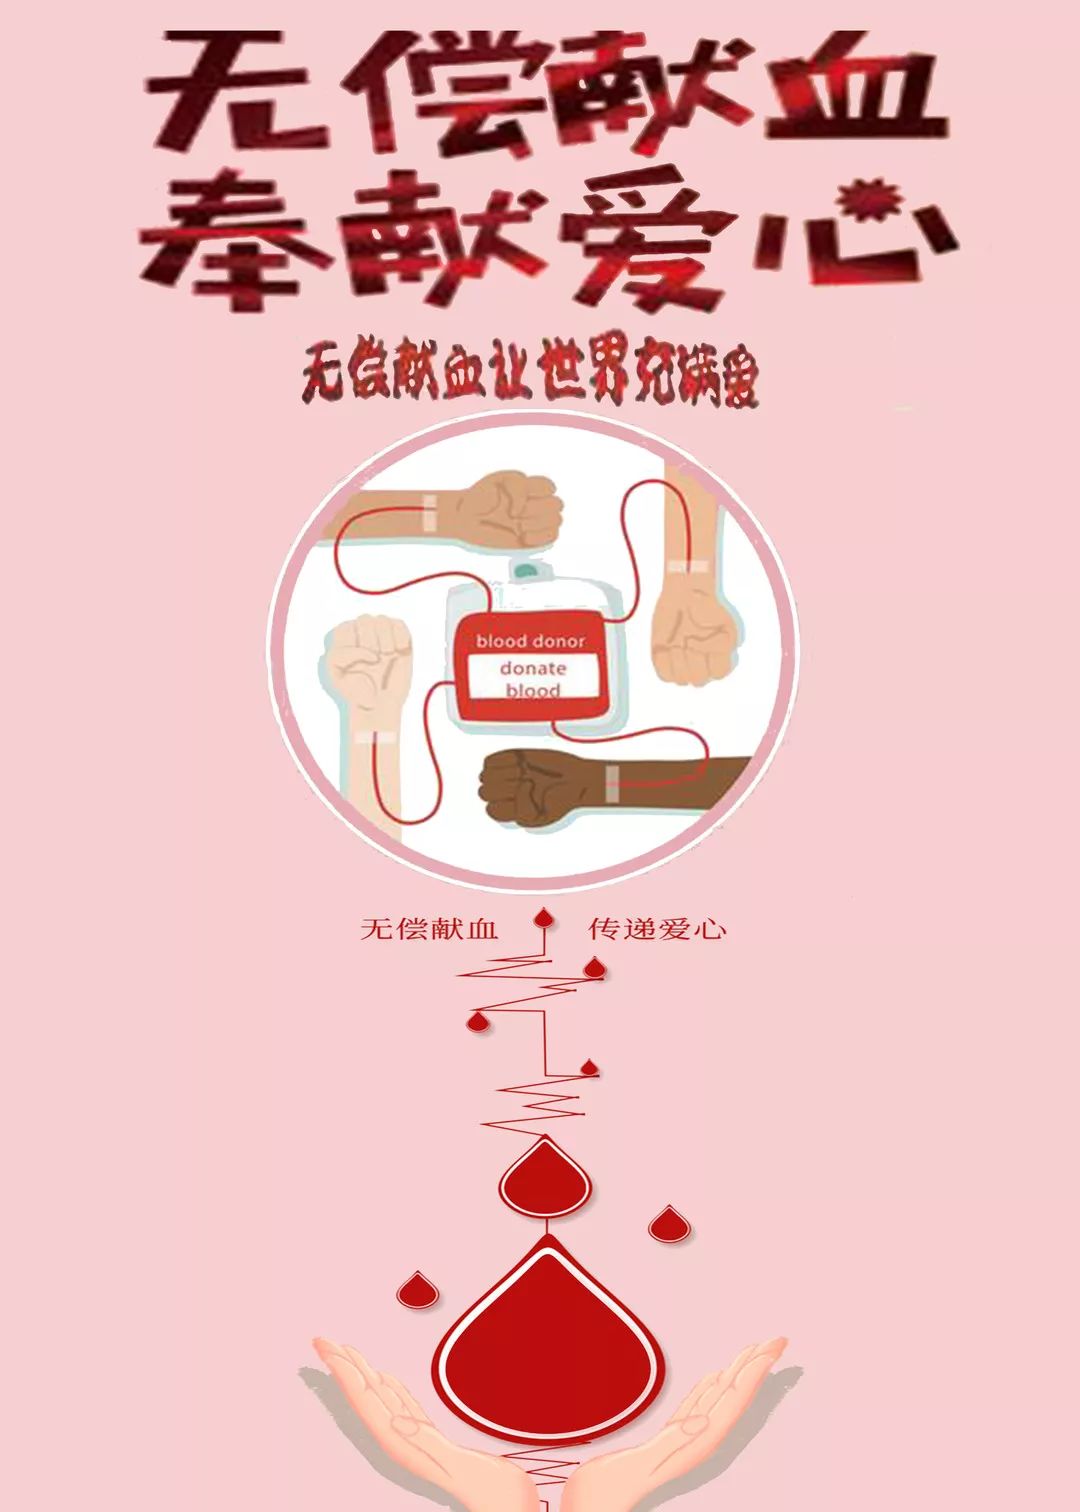 2019年献血海报设计大赛|传递热血 彩绘真情